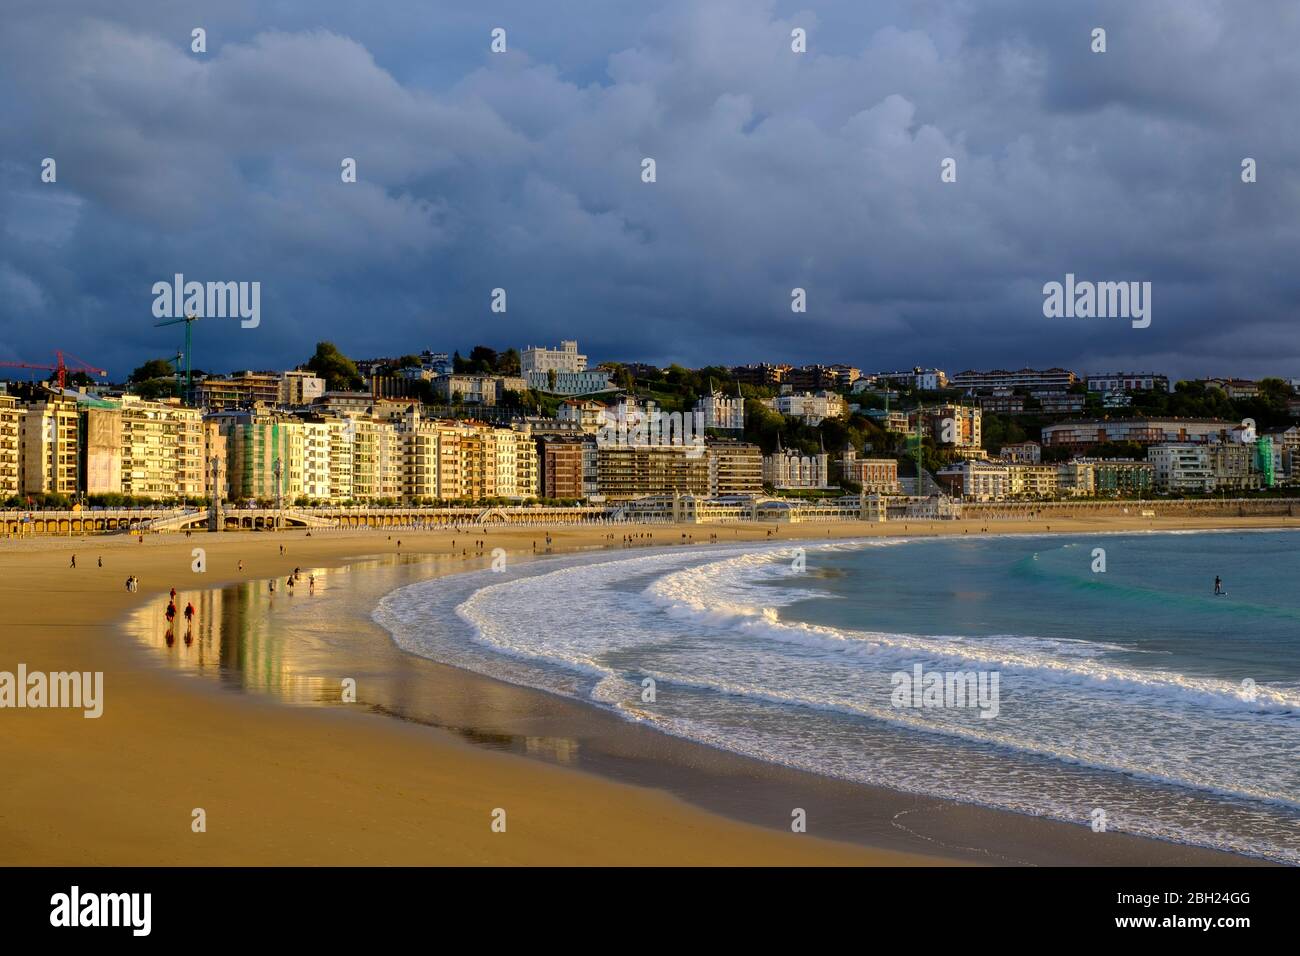 España, Gipuzkoa, San Sebastián, nubes de tormenta sobre la playa de arena de la Bahía de la Concha con edificios de la ciudad en el fondo Foto de stock